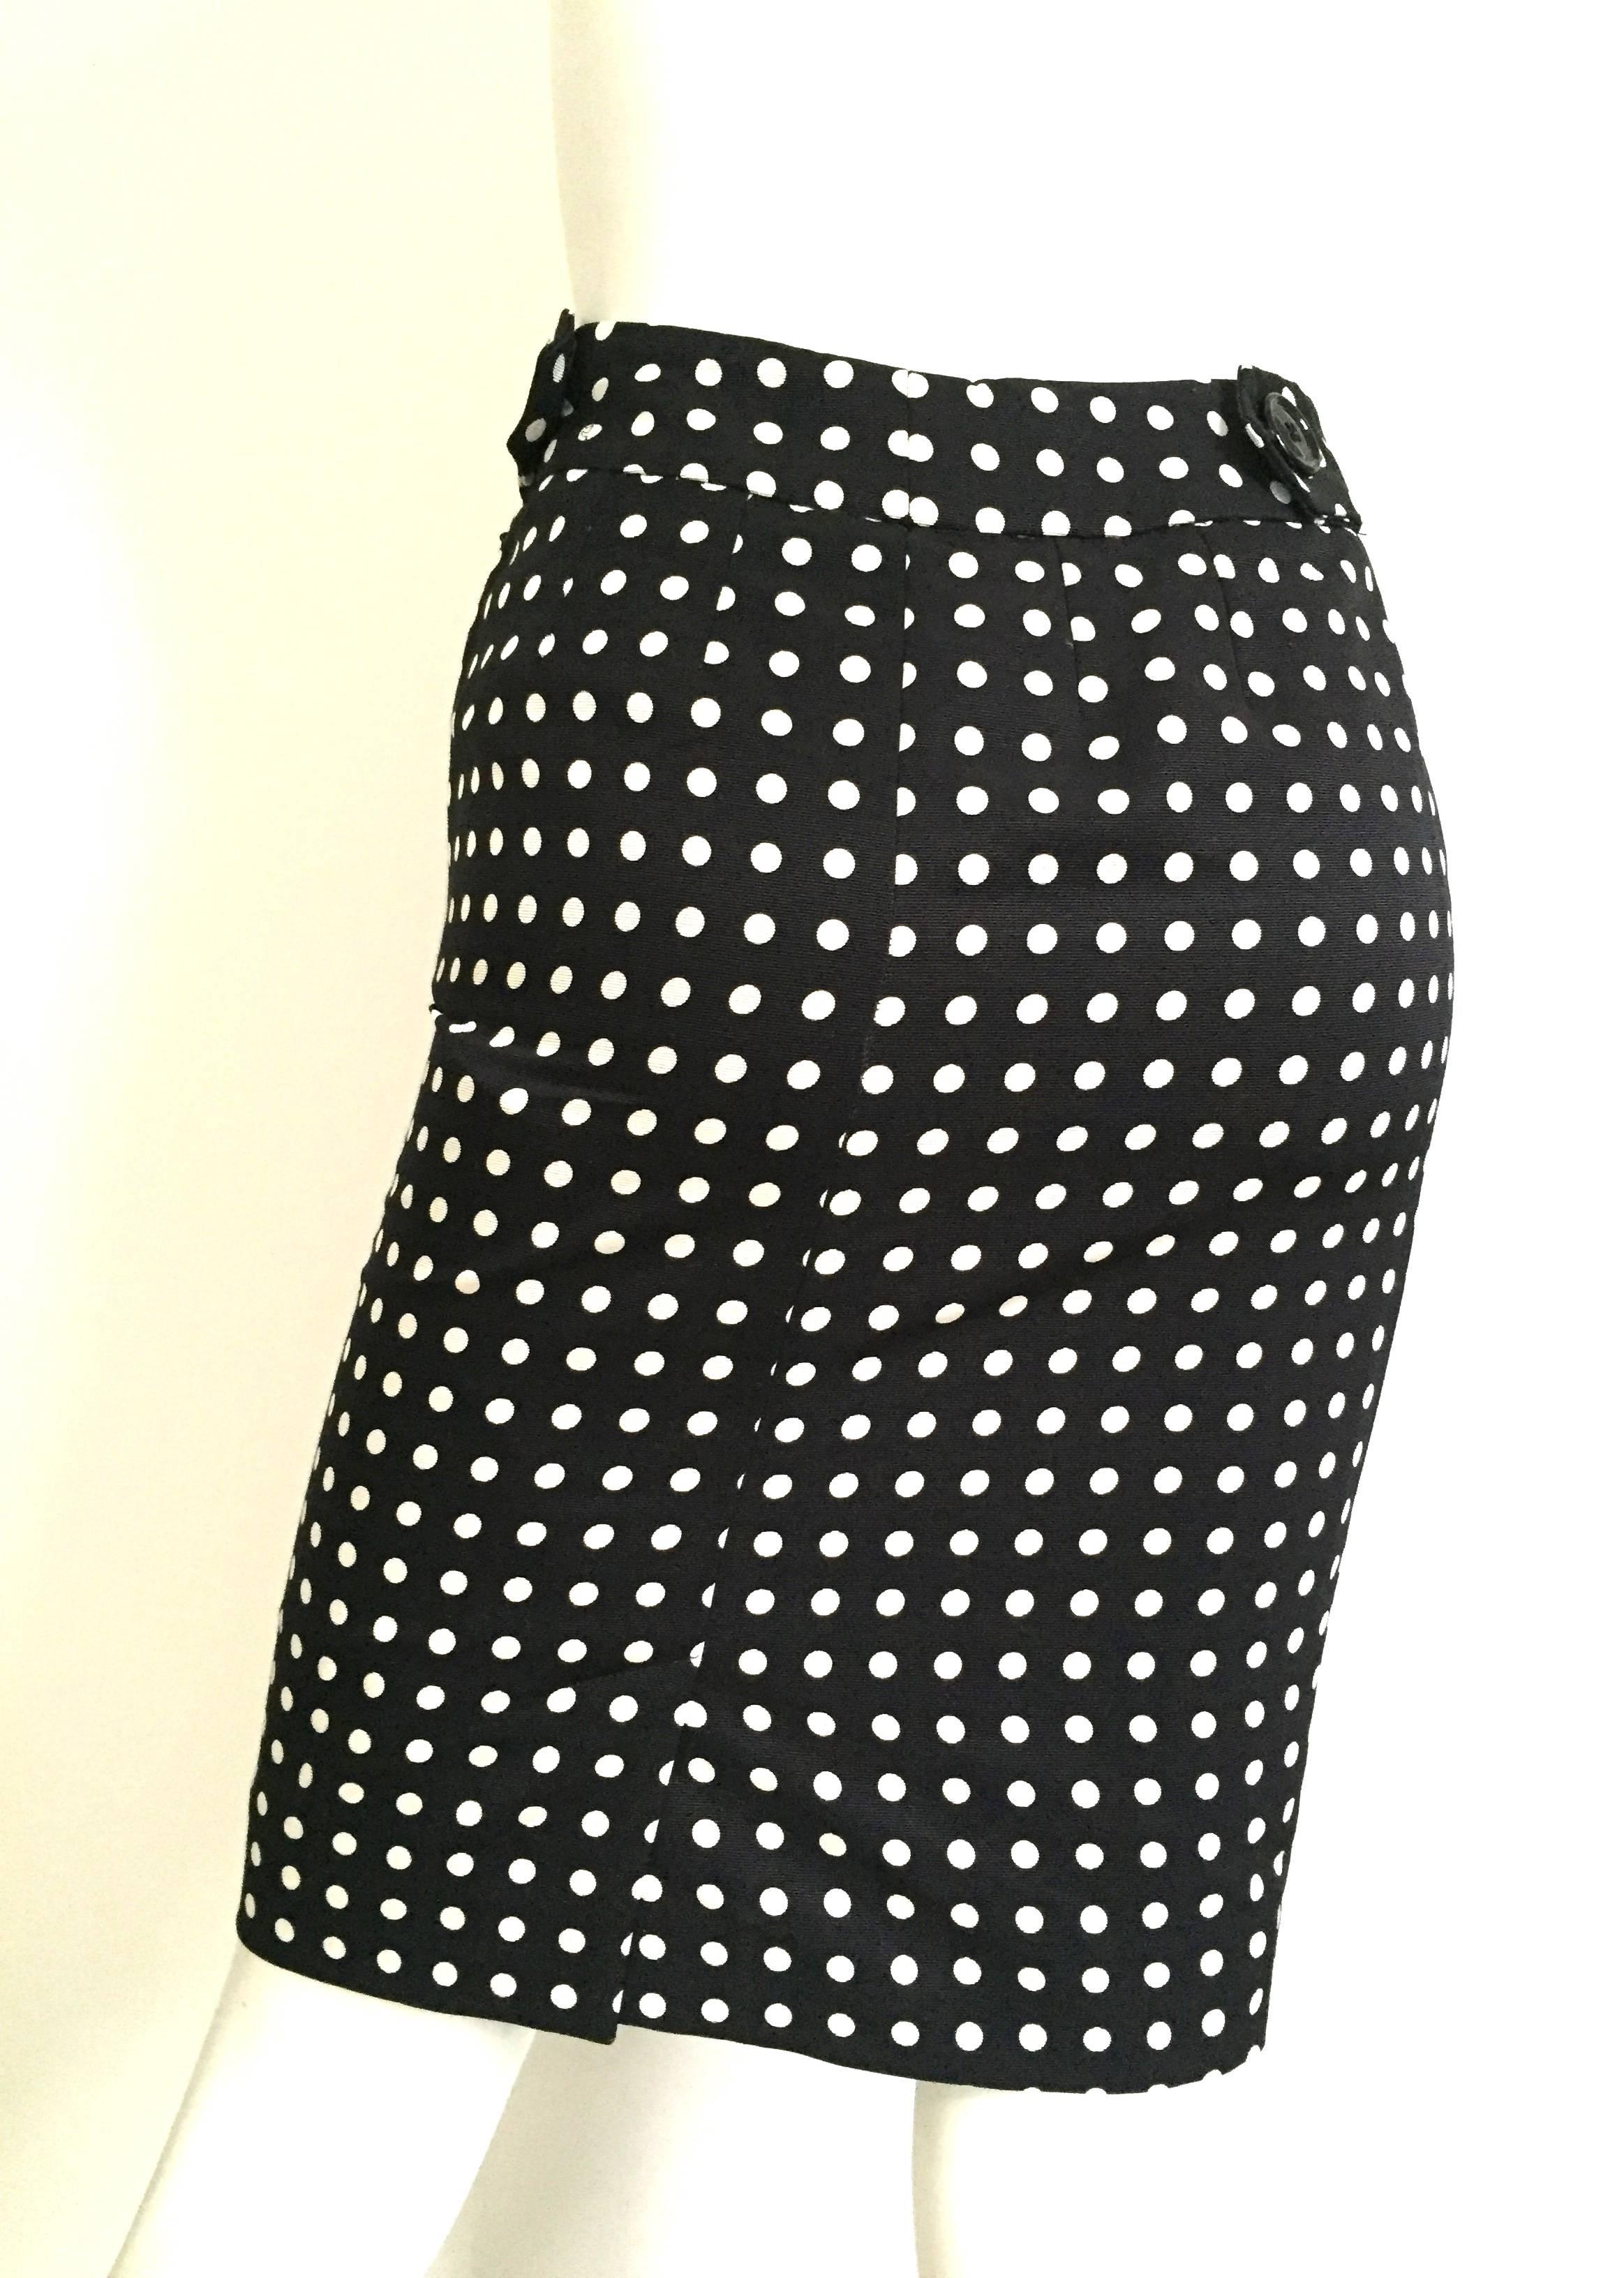 Women's Yves Saint Laurent Polka Dot Skirt Size 4.